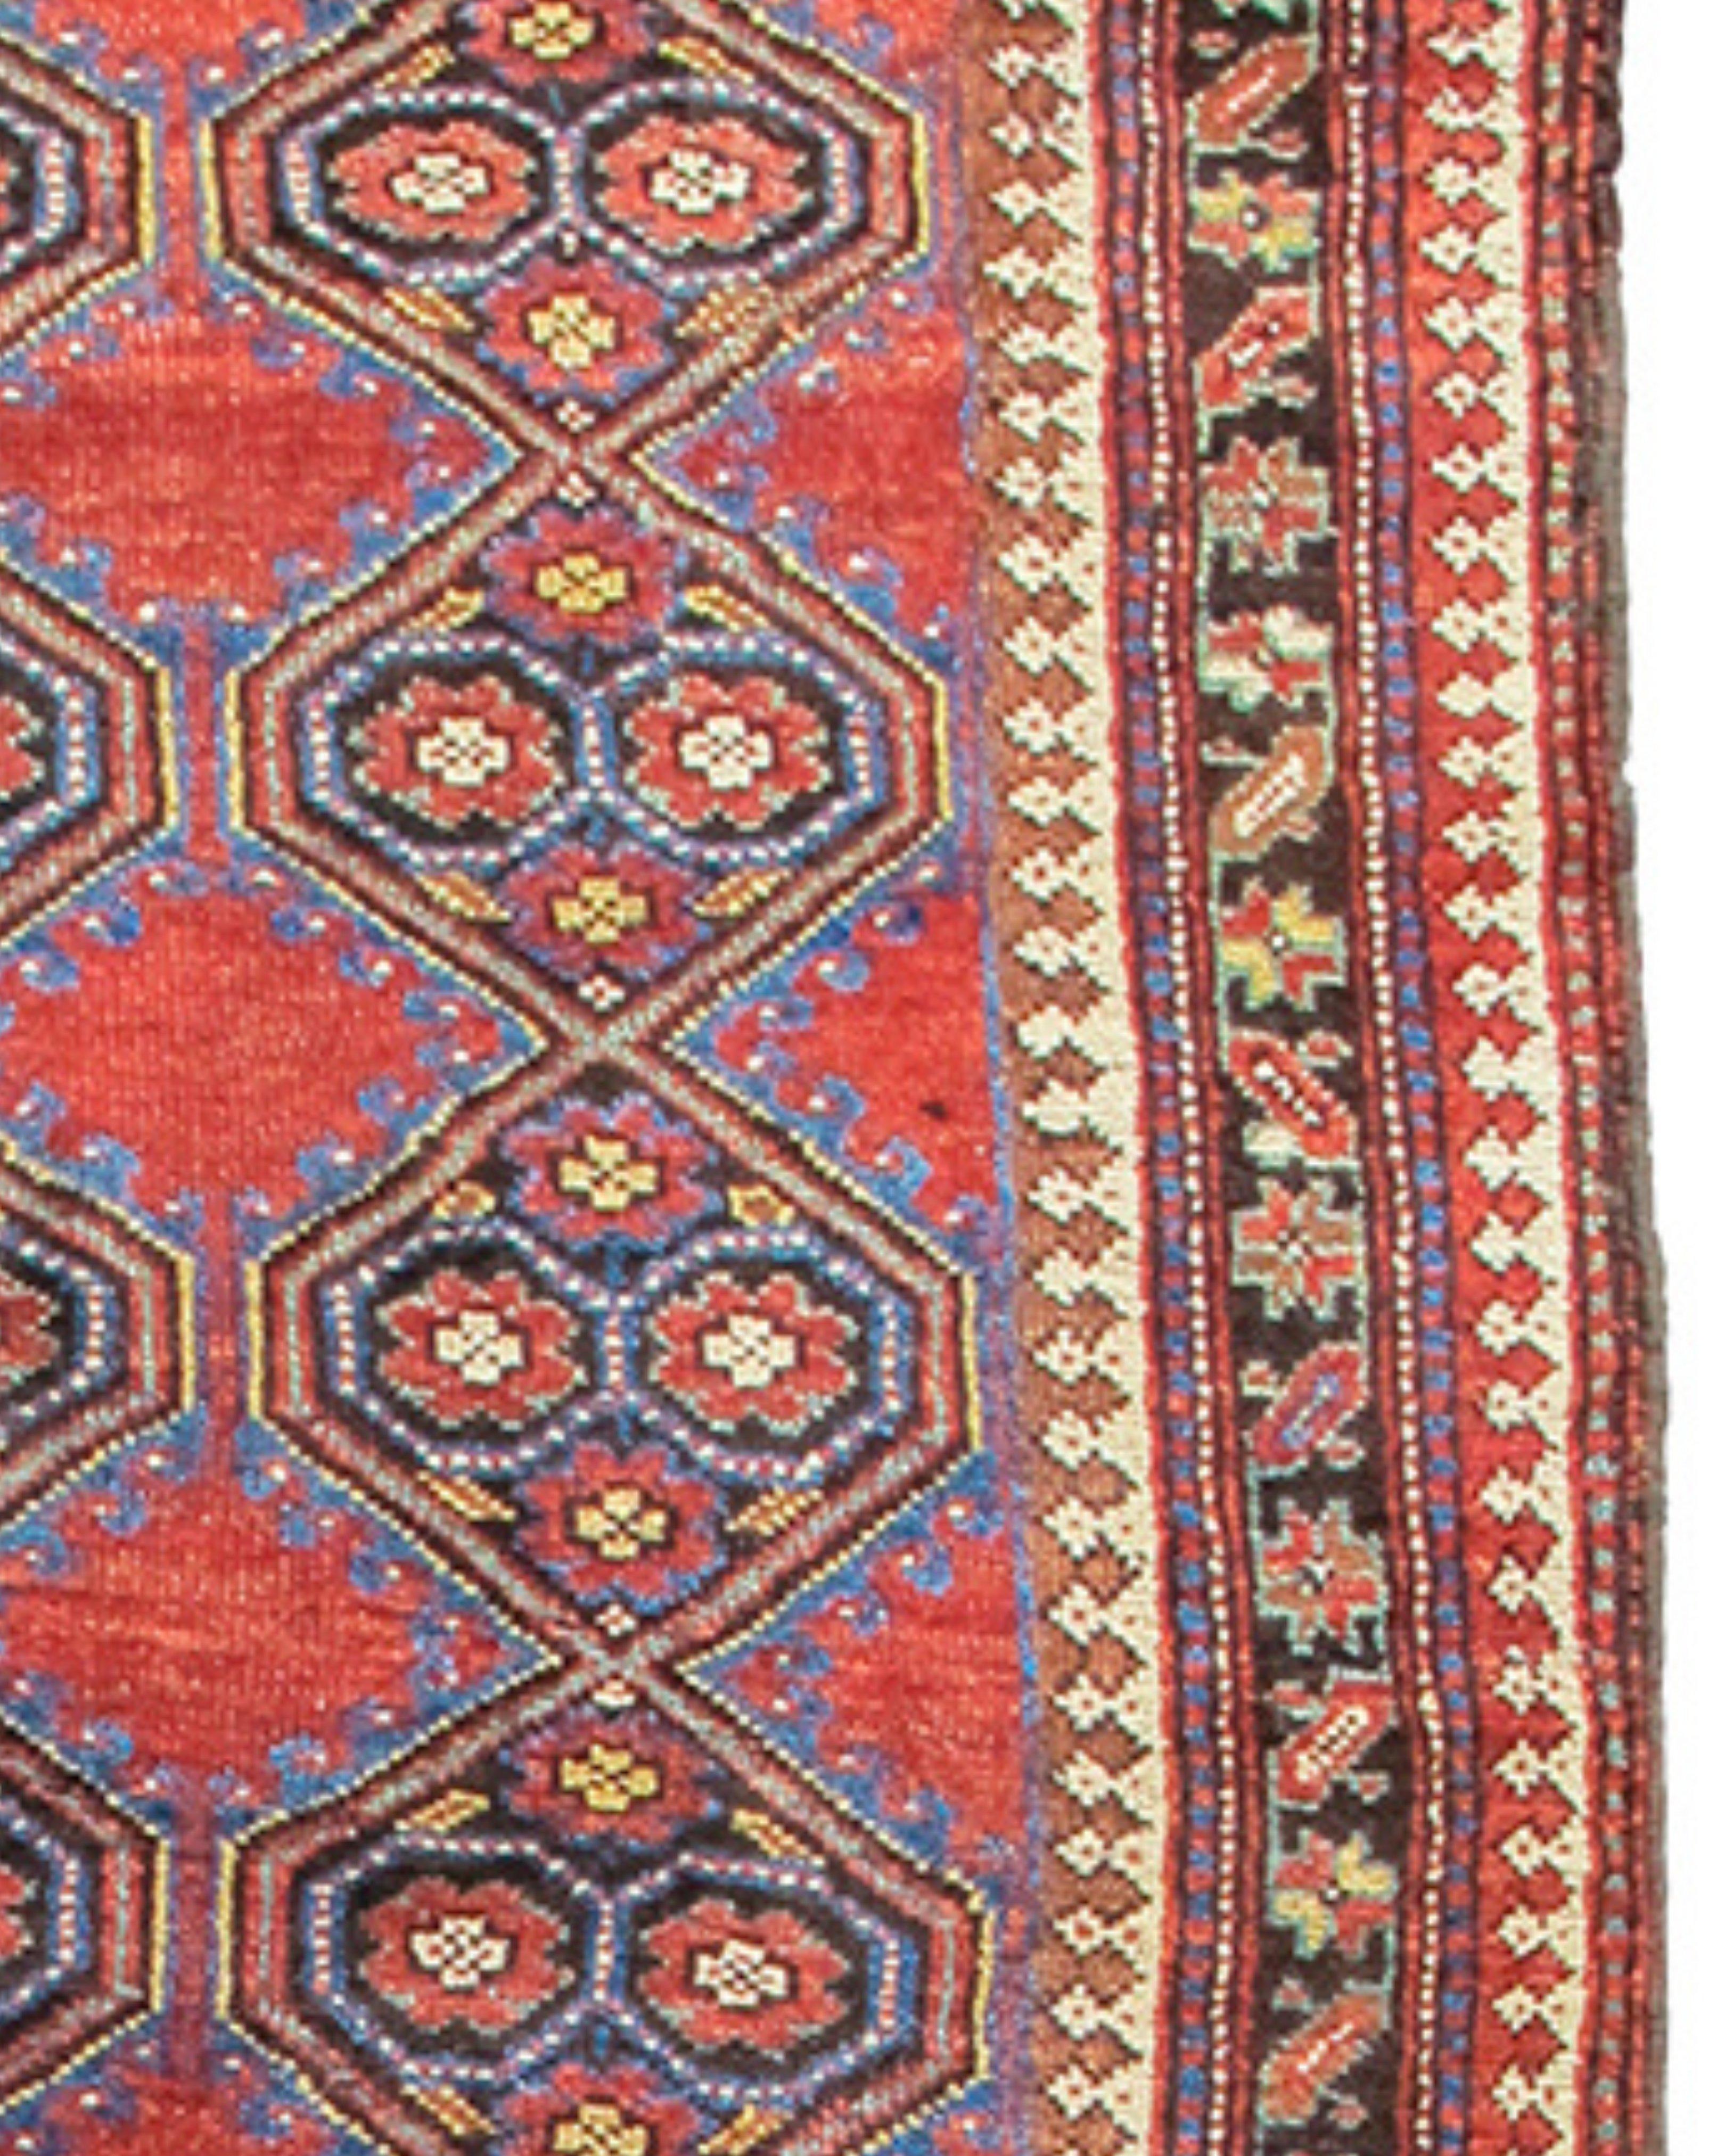 Ancien tapis kurde persan, fin du 19e siècle

Informations complémentaires :
Dimensions : 4'0